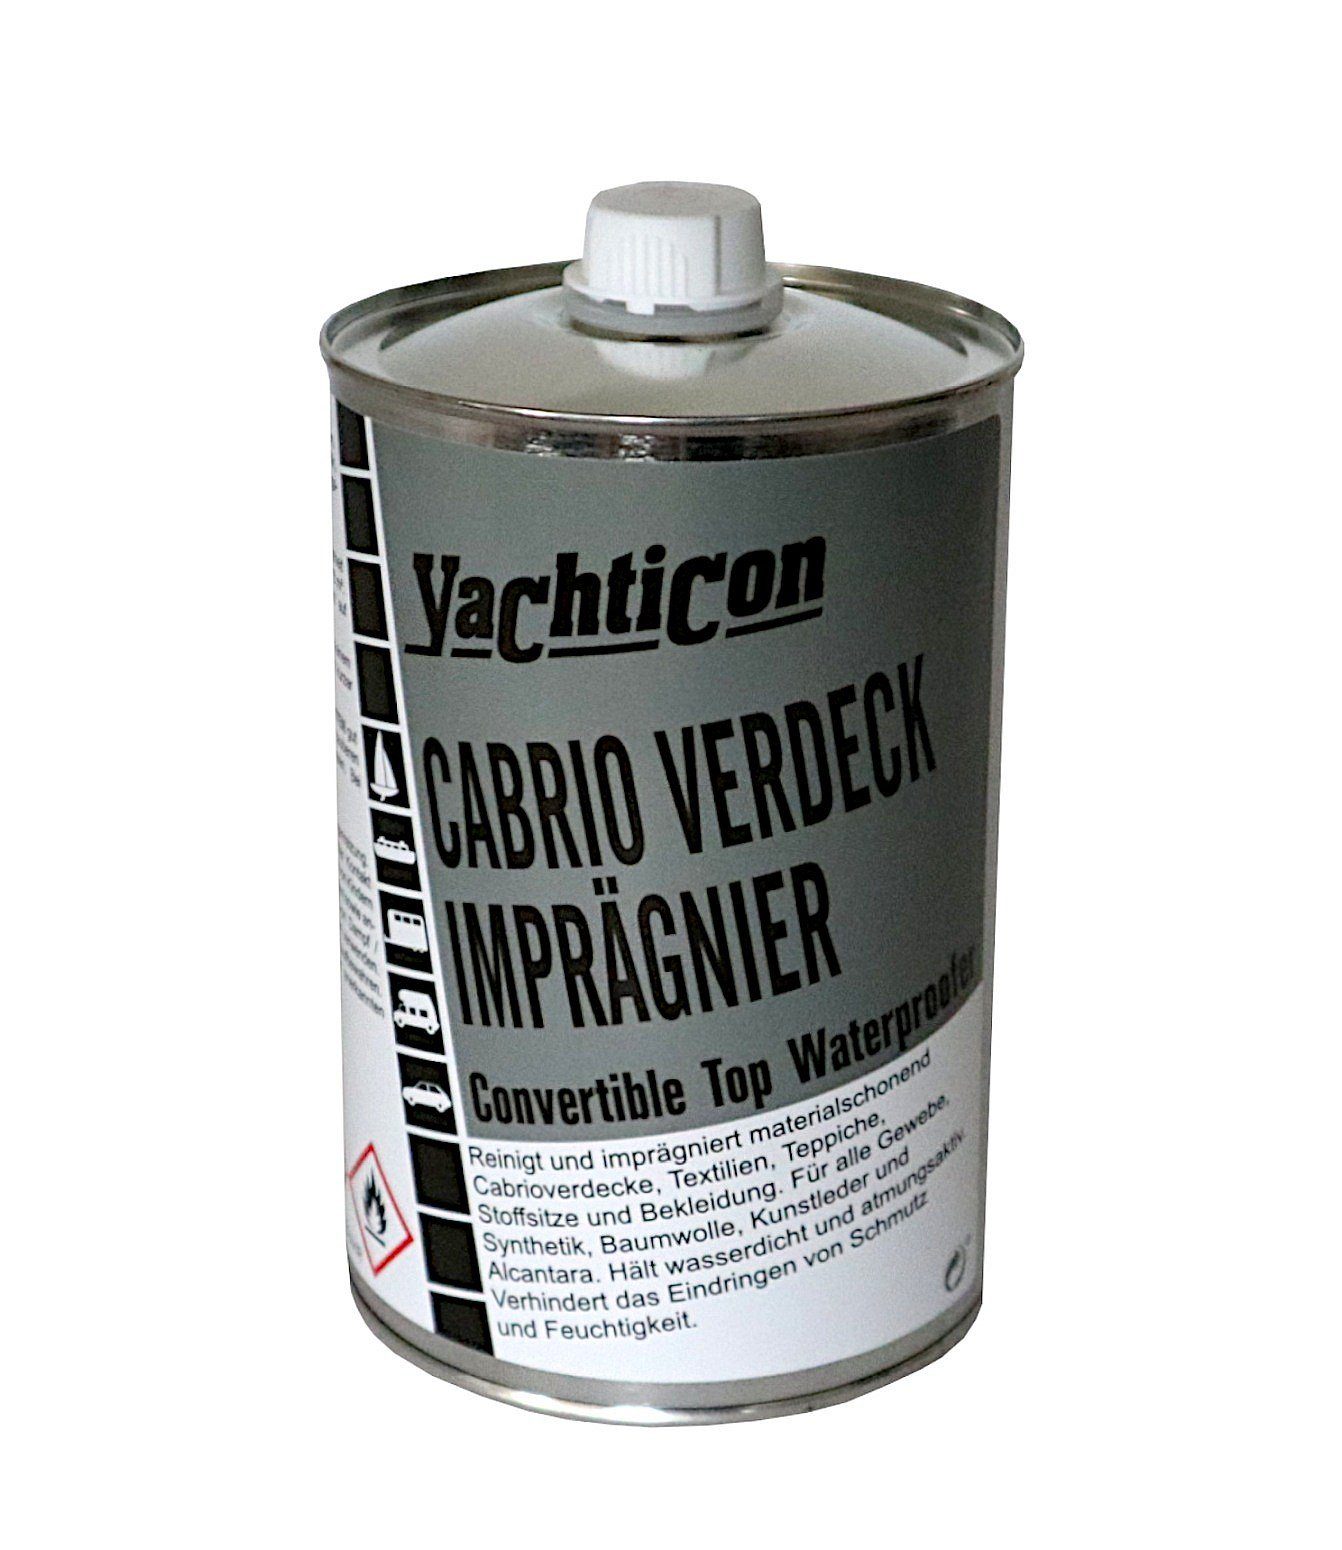 YACHTICON A. Nagel GmbH Cabrioverdeck Imprägnierer 1 Liter Imprägnierspray (1 St)